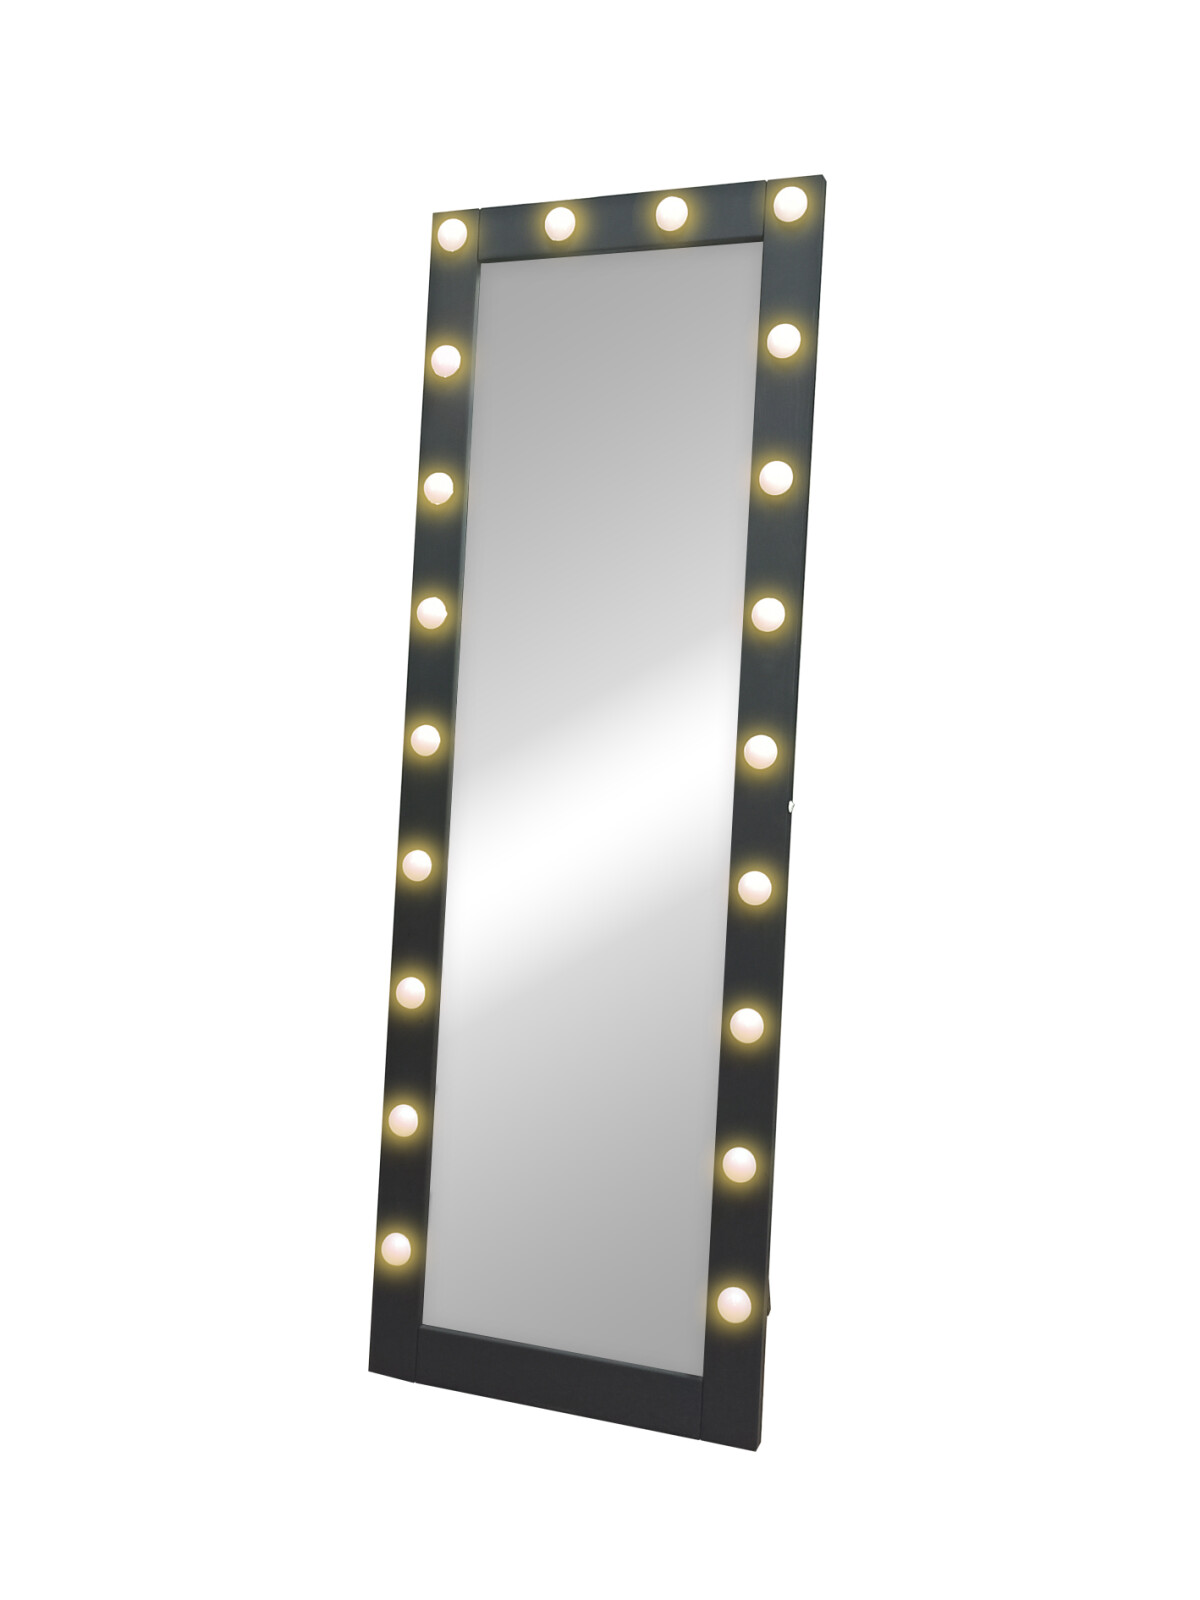 Зеркало Гримерное напольное черное 600х1750 (20 ламп)